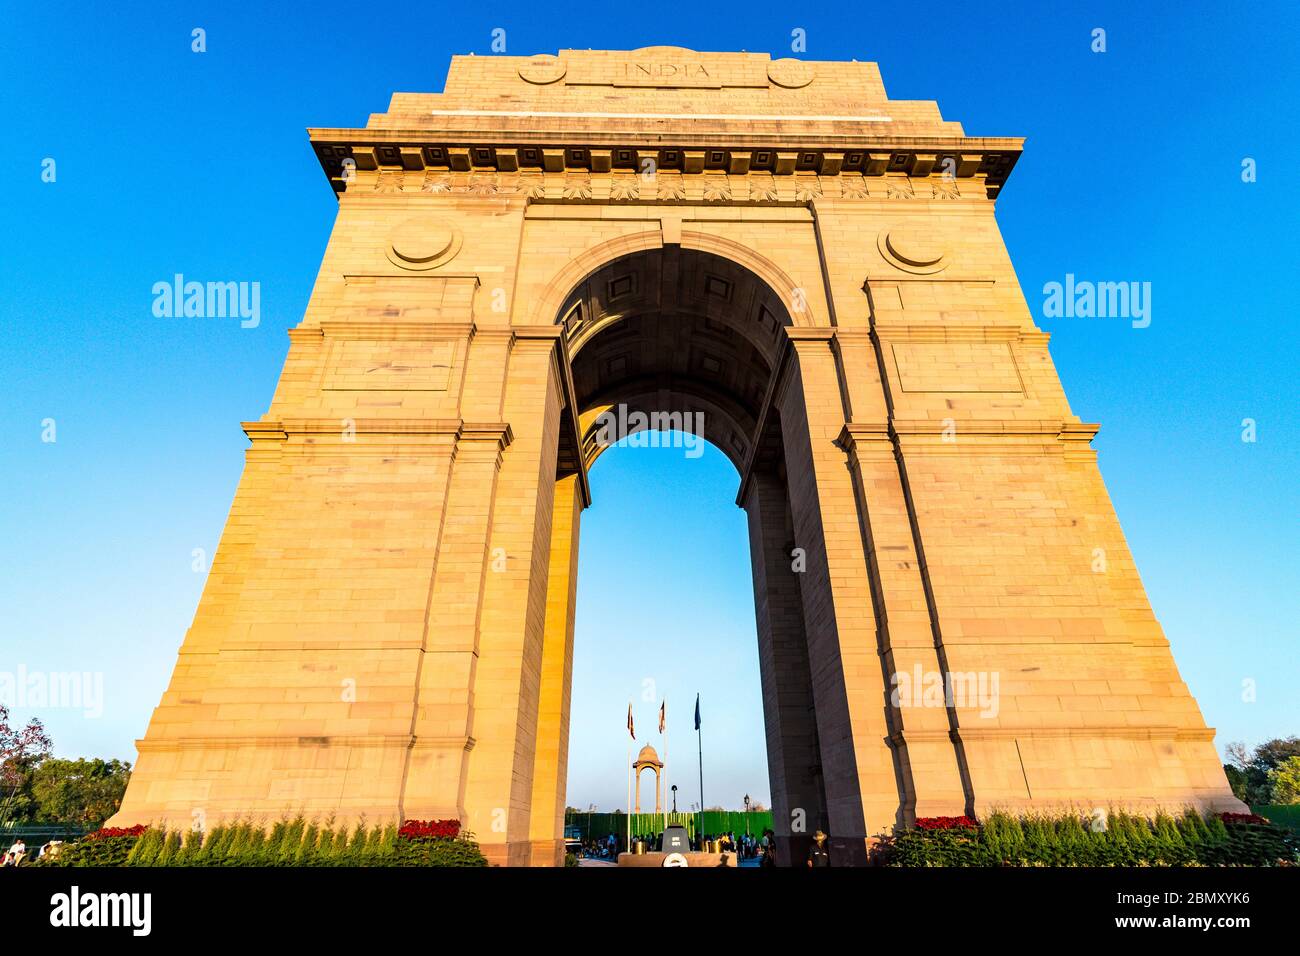 India Gate situato a Nuova Delhi, India - questo cancello è un monumento di guerra situato a cavallo del Rajpath. Il monumento turistico più famoso della capitale. Foto Stock